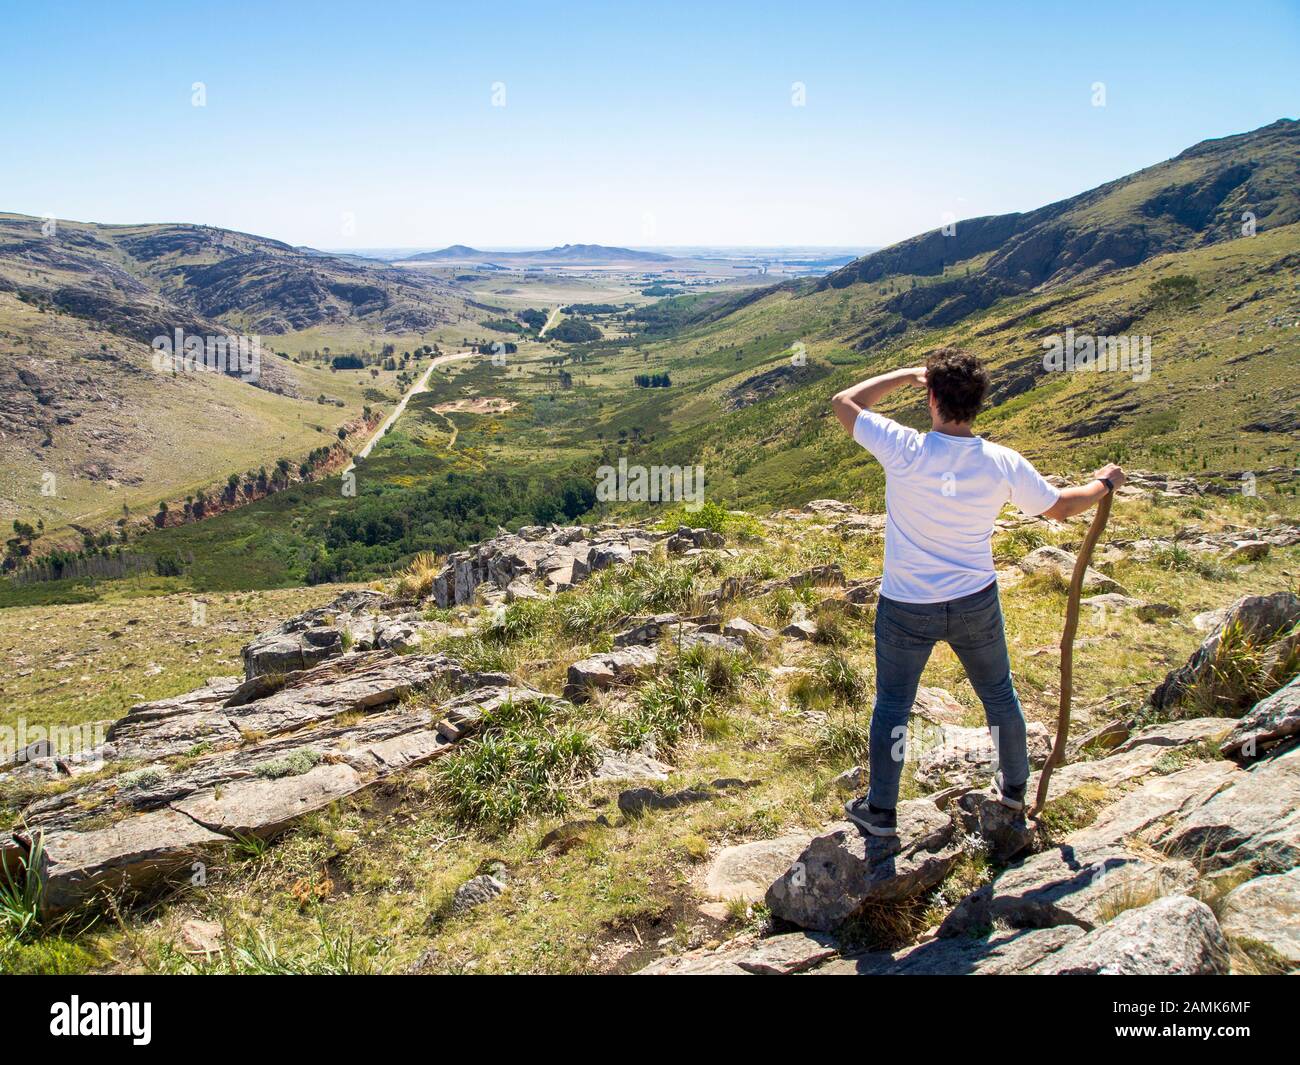 Young hiker looking at the view in Cerro Bahía Blanca, Sierra de la Ventana, Buenos Aires, Argentina. Stock Photo